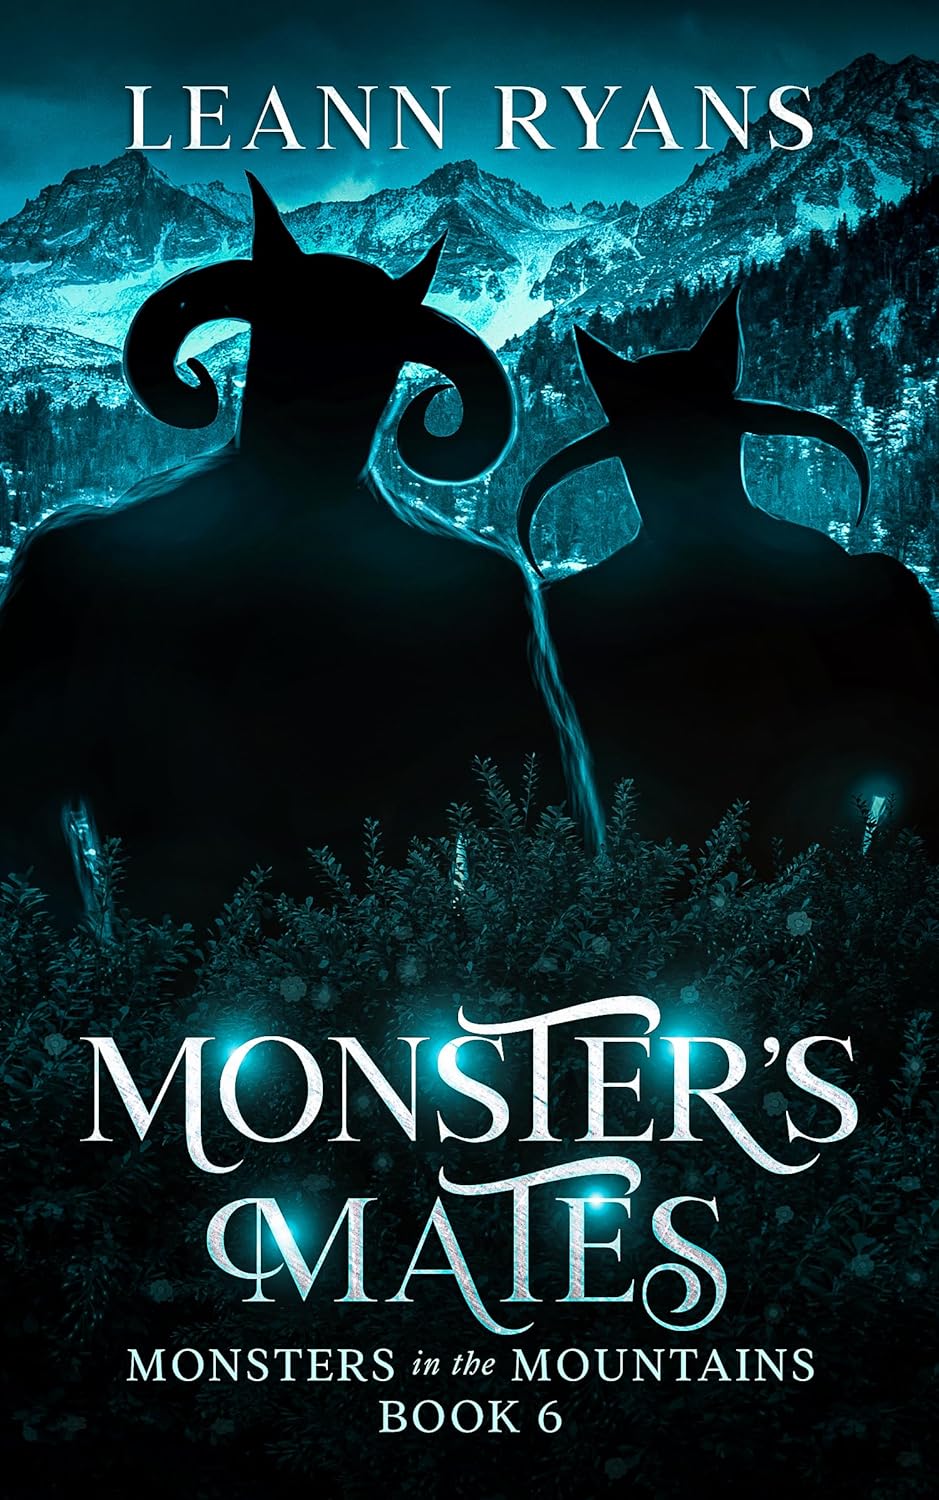 Monster’s Mates by Leann Ryans